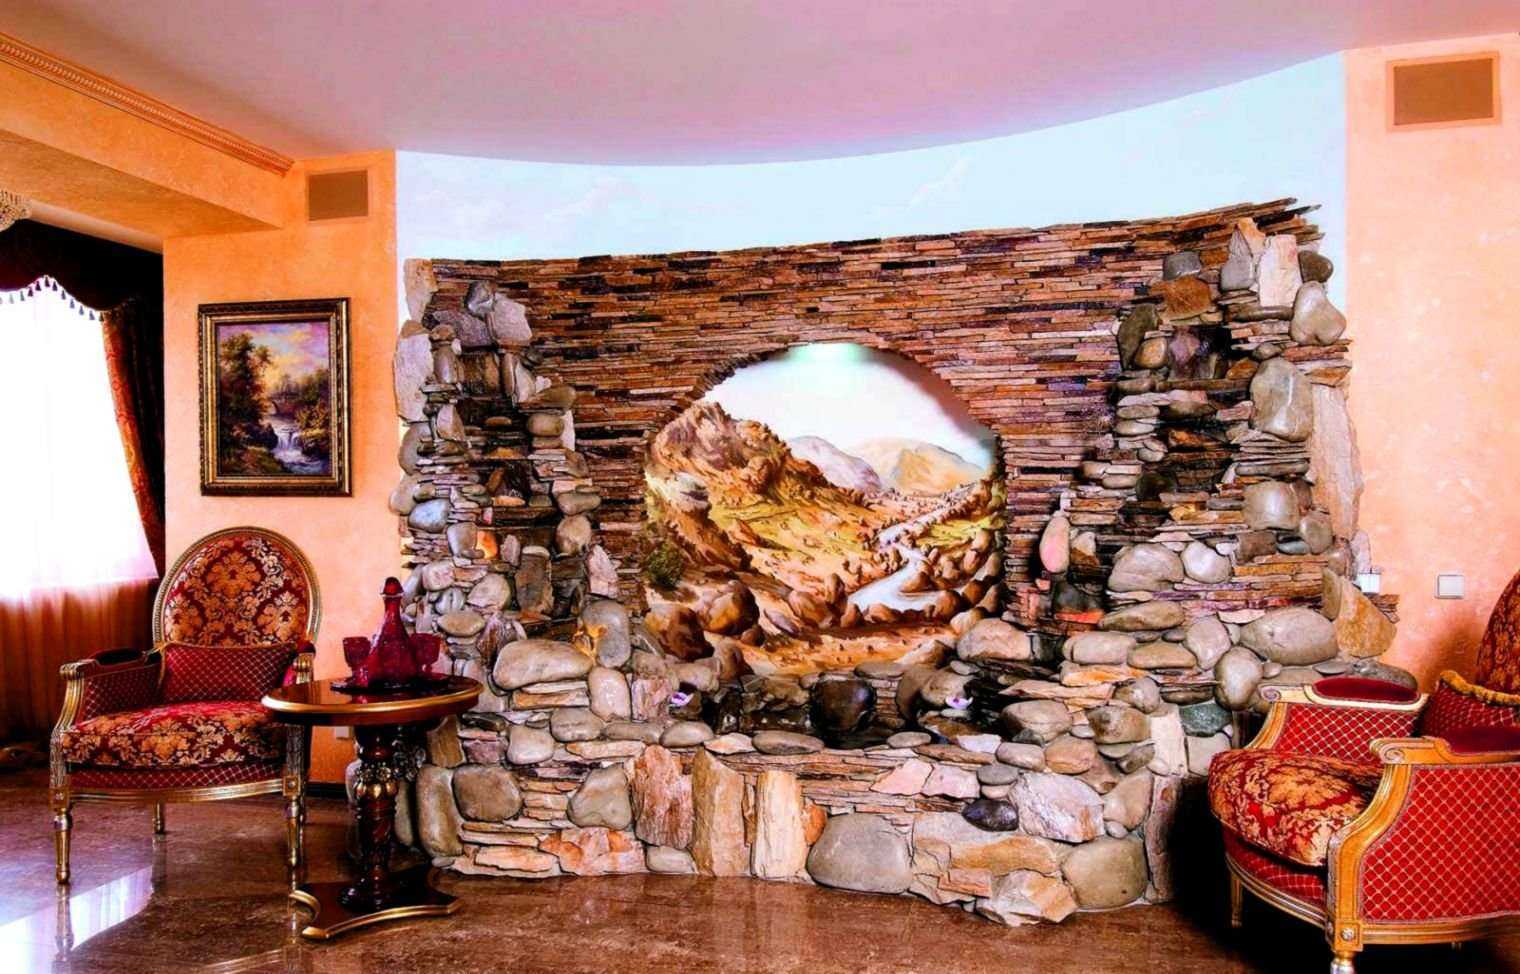 Отделка стен декоративным камнем как укладывать и правильно положить первый ряд, на что лучше клеить и примеры декорирования камня под обои в коридоре зале или гостиной